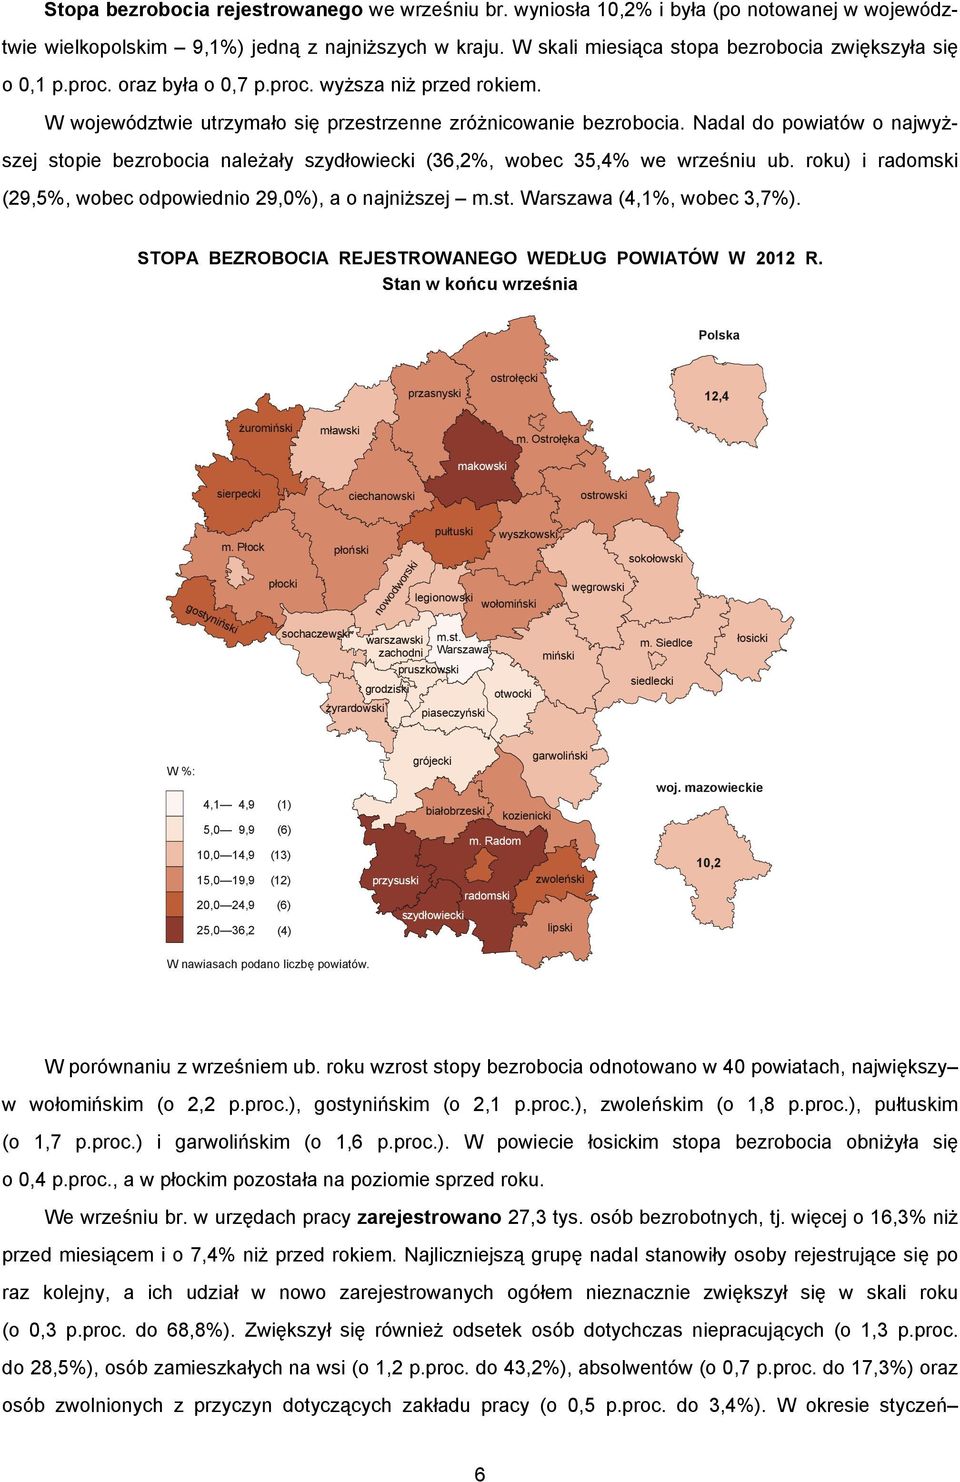 Nadal do powiatów o najwyższej stopie bezrobocia należały szydłowiecki (36,2%, wobec 35,4% we wrześniu ub. roku) i radomski (29,5%, wobec odpowiednio 29,0%), a o najniższej m.st. Warszawa (4,1%, wobec 3,7%).